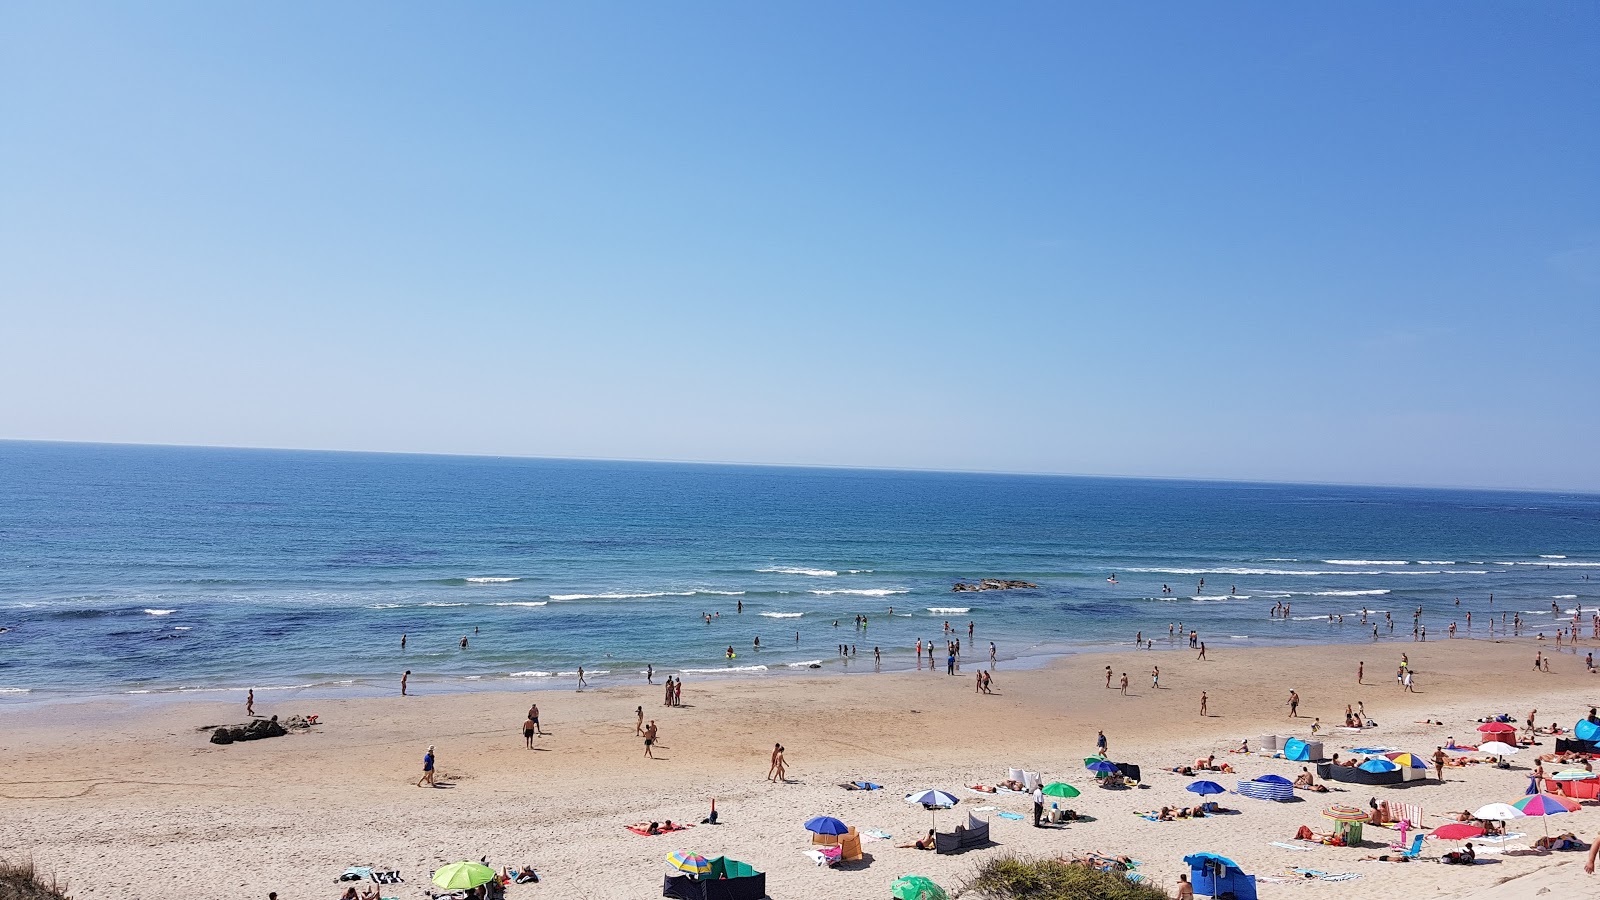 Praia da Apulia'in fotoğrafı parlak ince kum yüzey ile